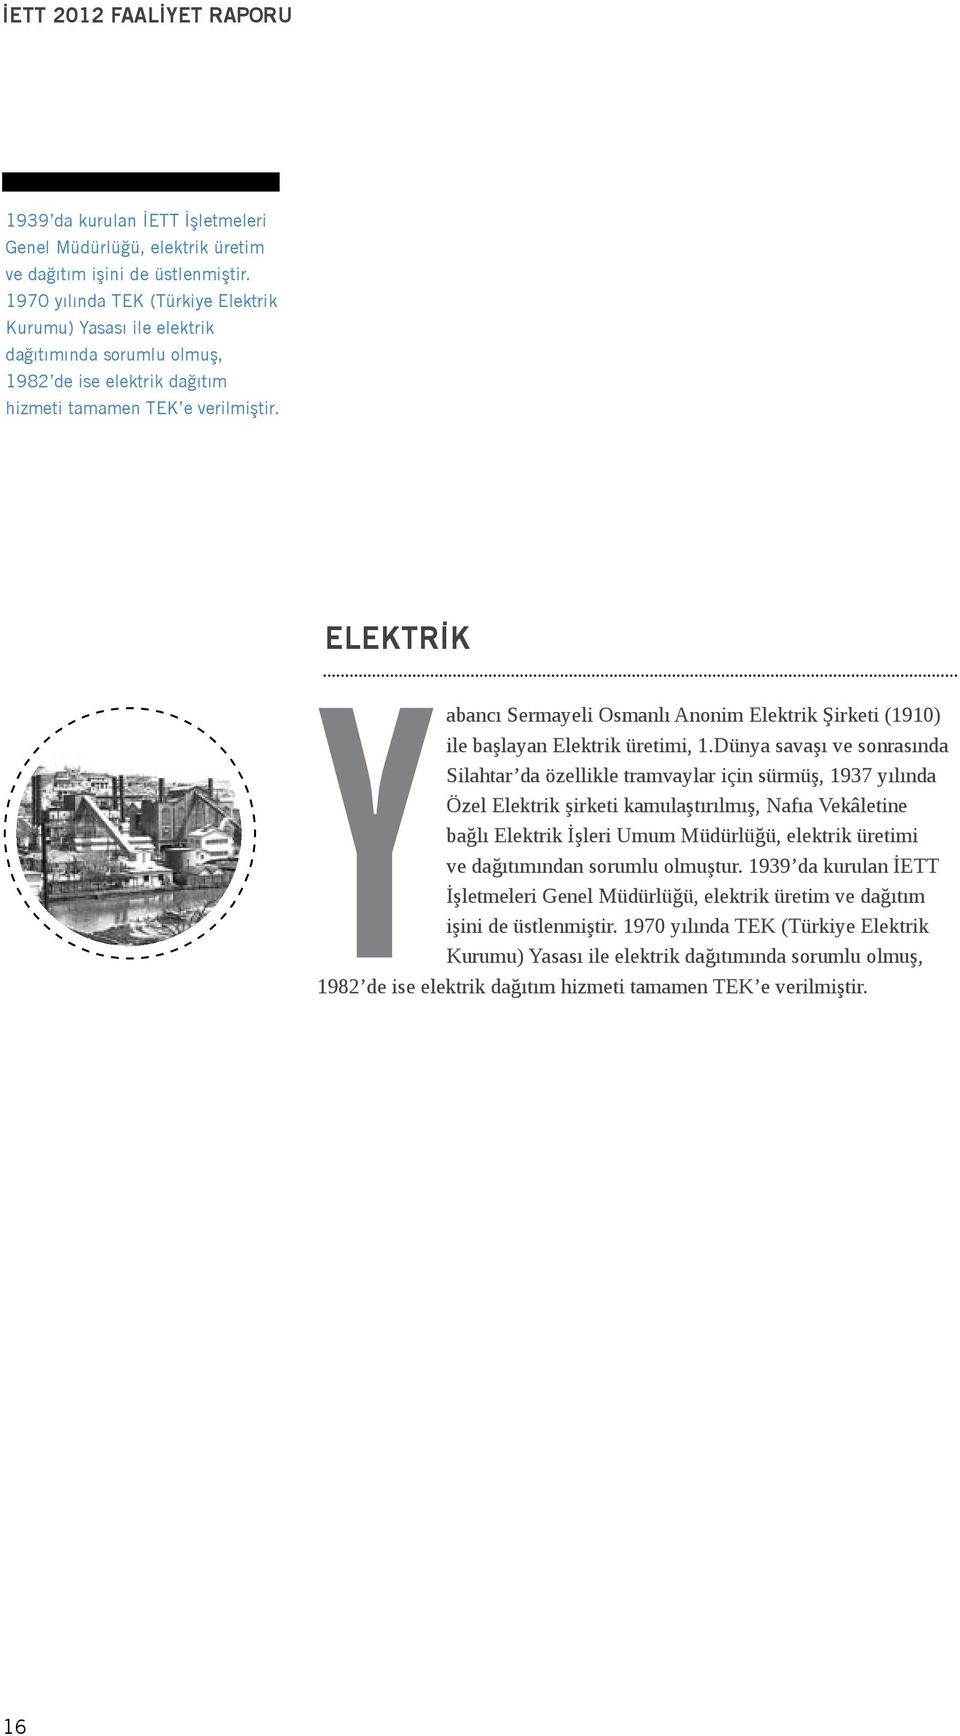 ELEKTRİK Yabancı Sermayeli Osmanlı Anonim Elektrik Şirketi (1910) ile başlayan Elektrik üretimi, 1.